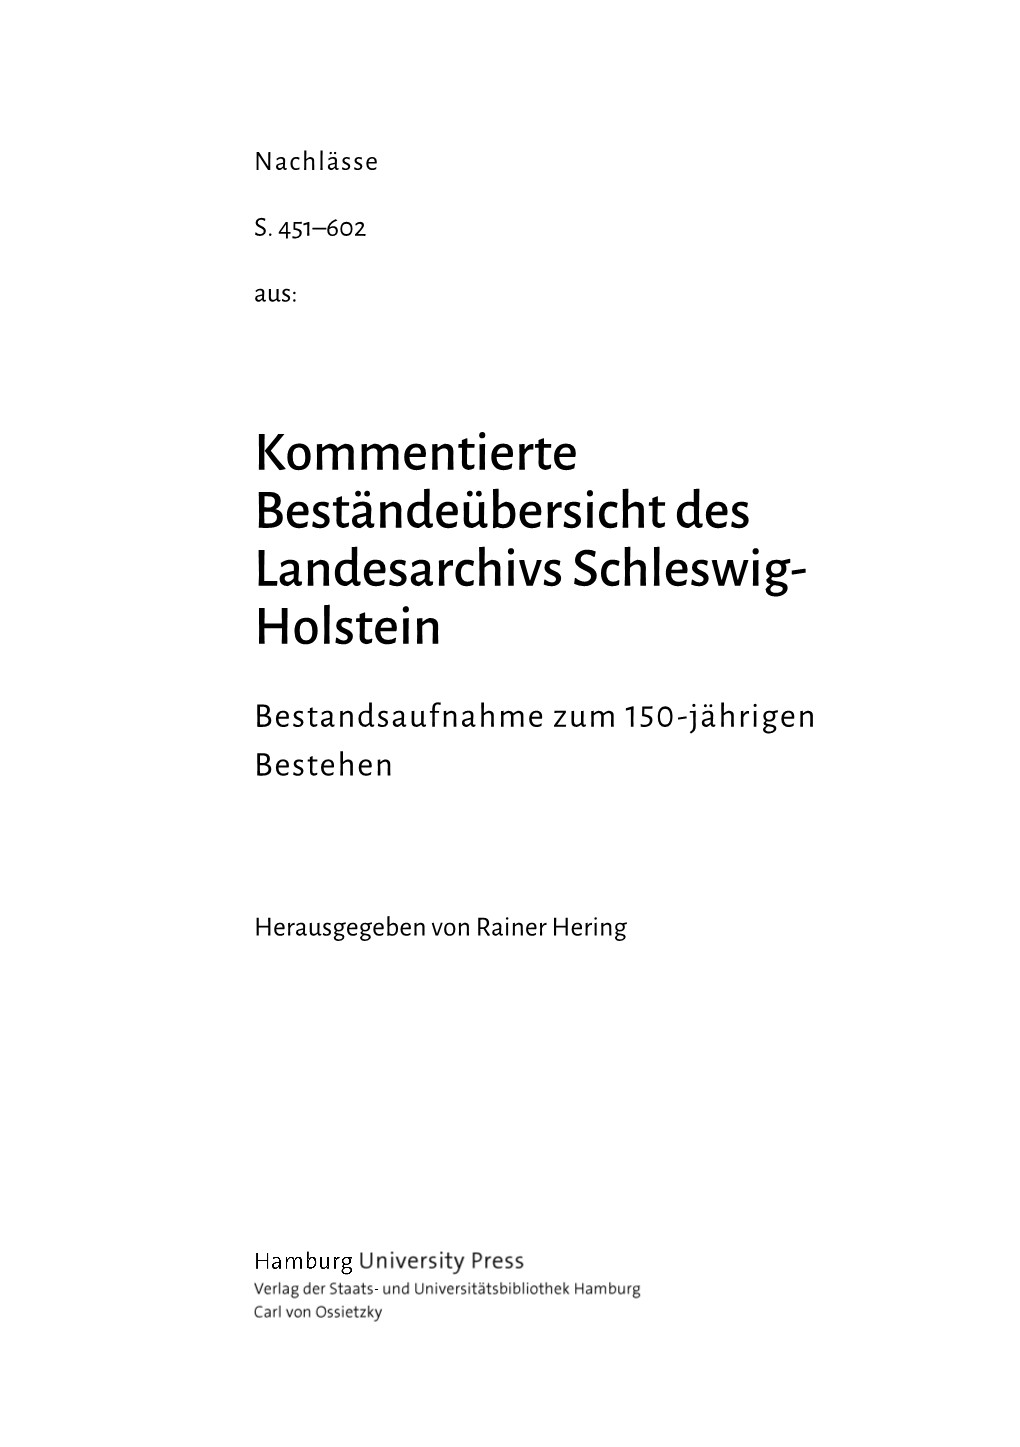 Kommentierte Beständeübersicht Des Landesarchivs Schleswig-Holstein